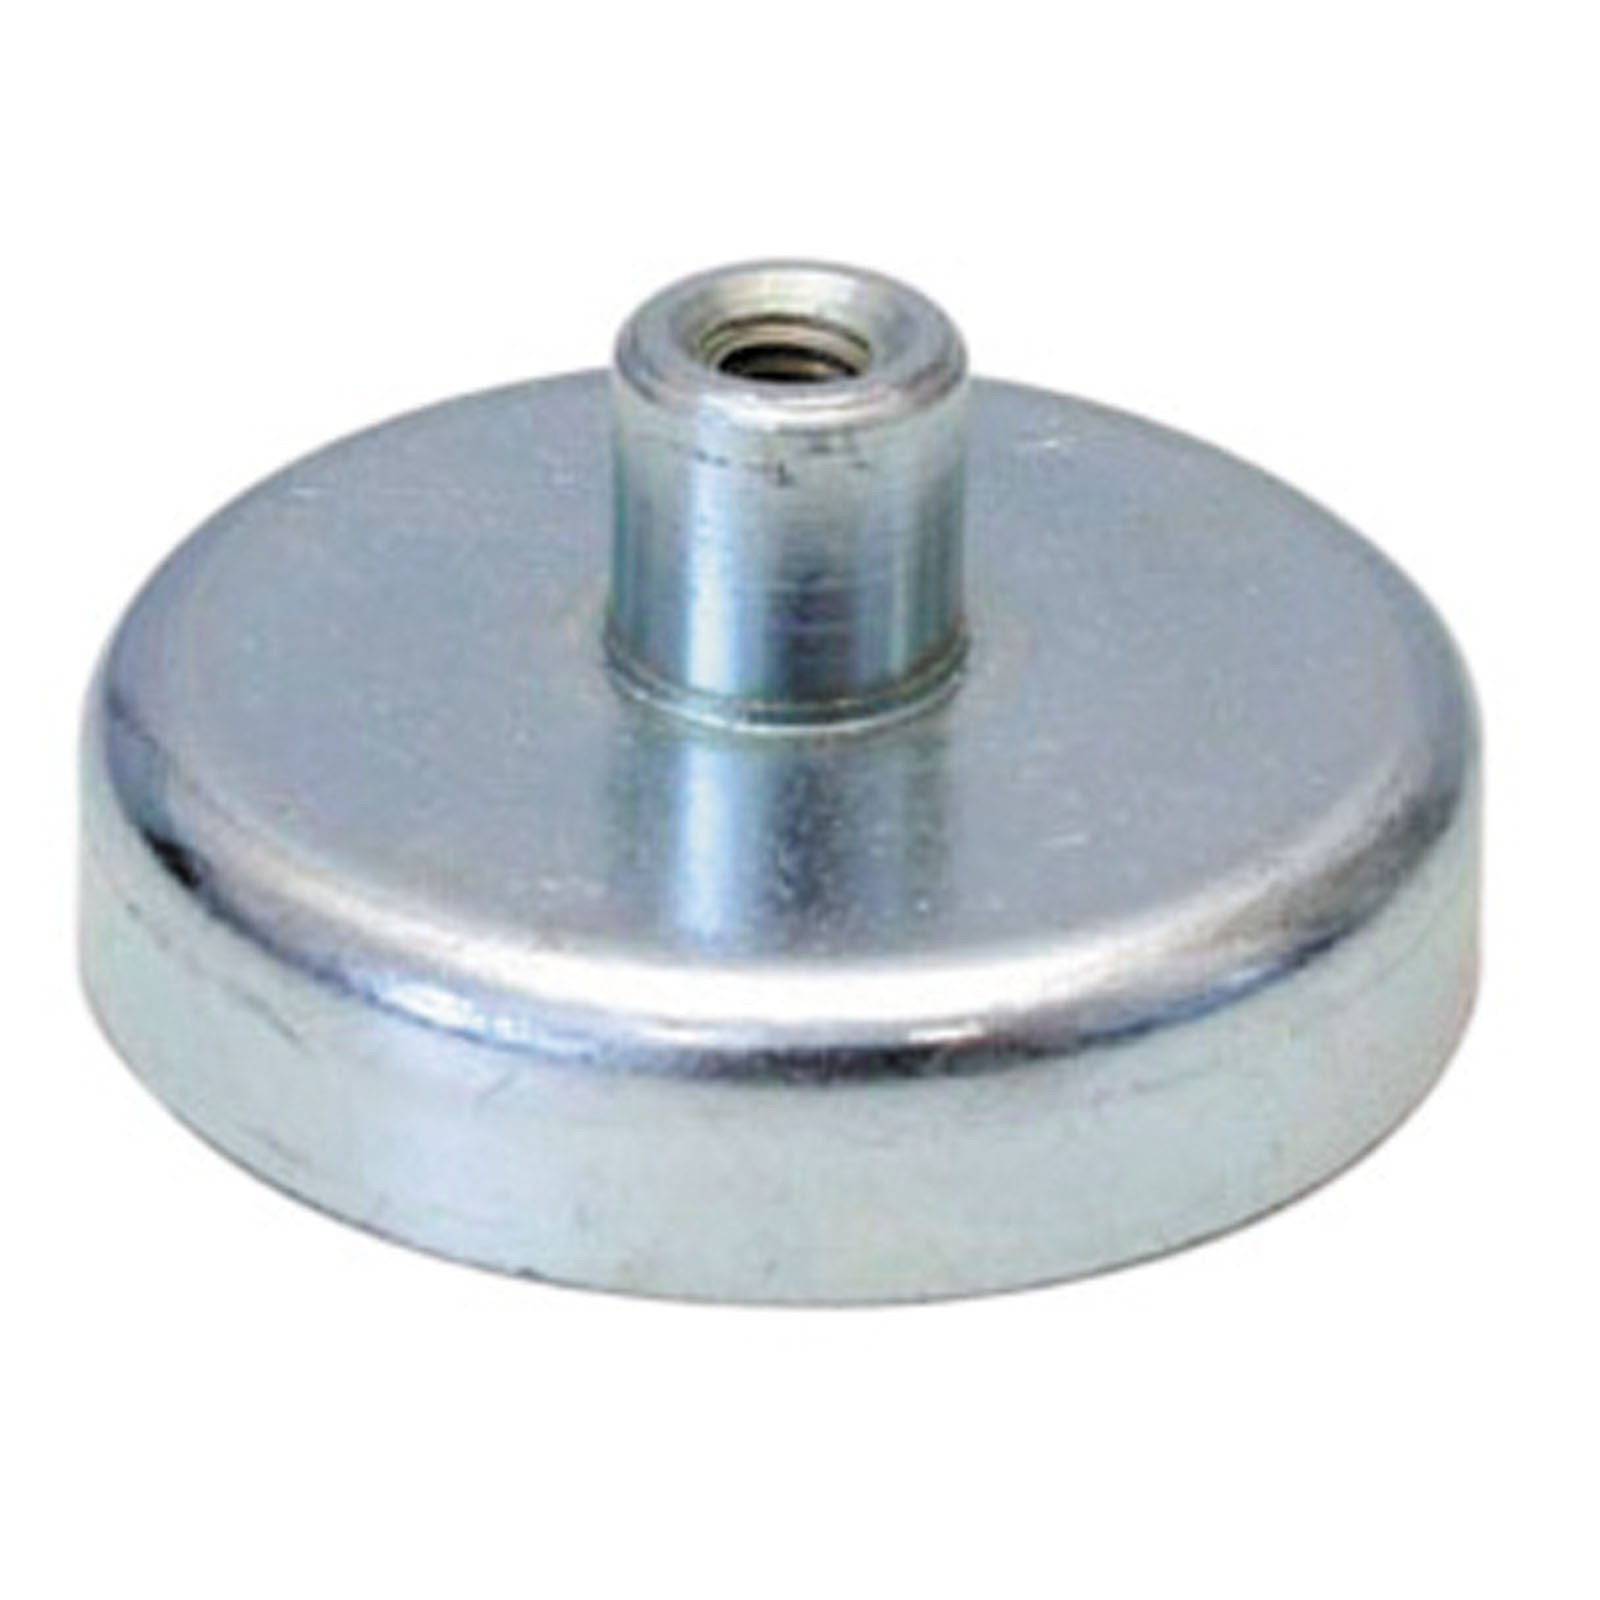 Flachgreifer Magnet mit Gewinde - Magnetfuß, Topfmagnet - div. Größen 10 - 125mm Größe:80.0 mm von Rimag